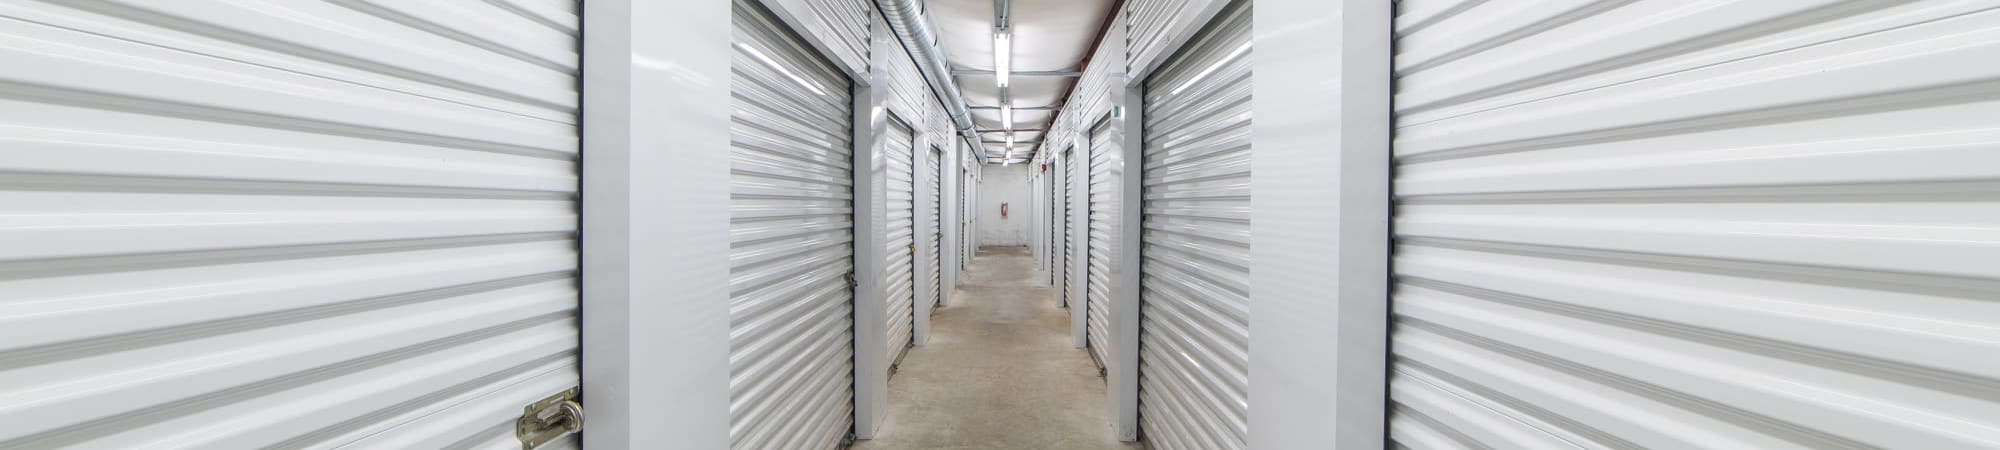 Heated storage at Sound Storage in Port Orchard, Washington